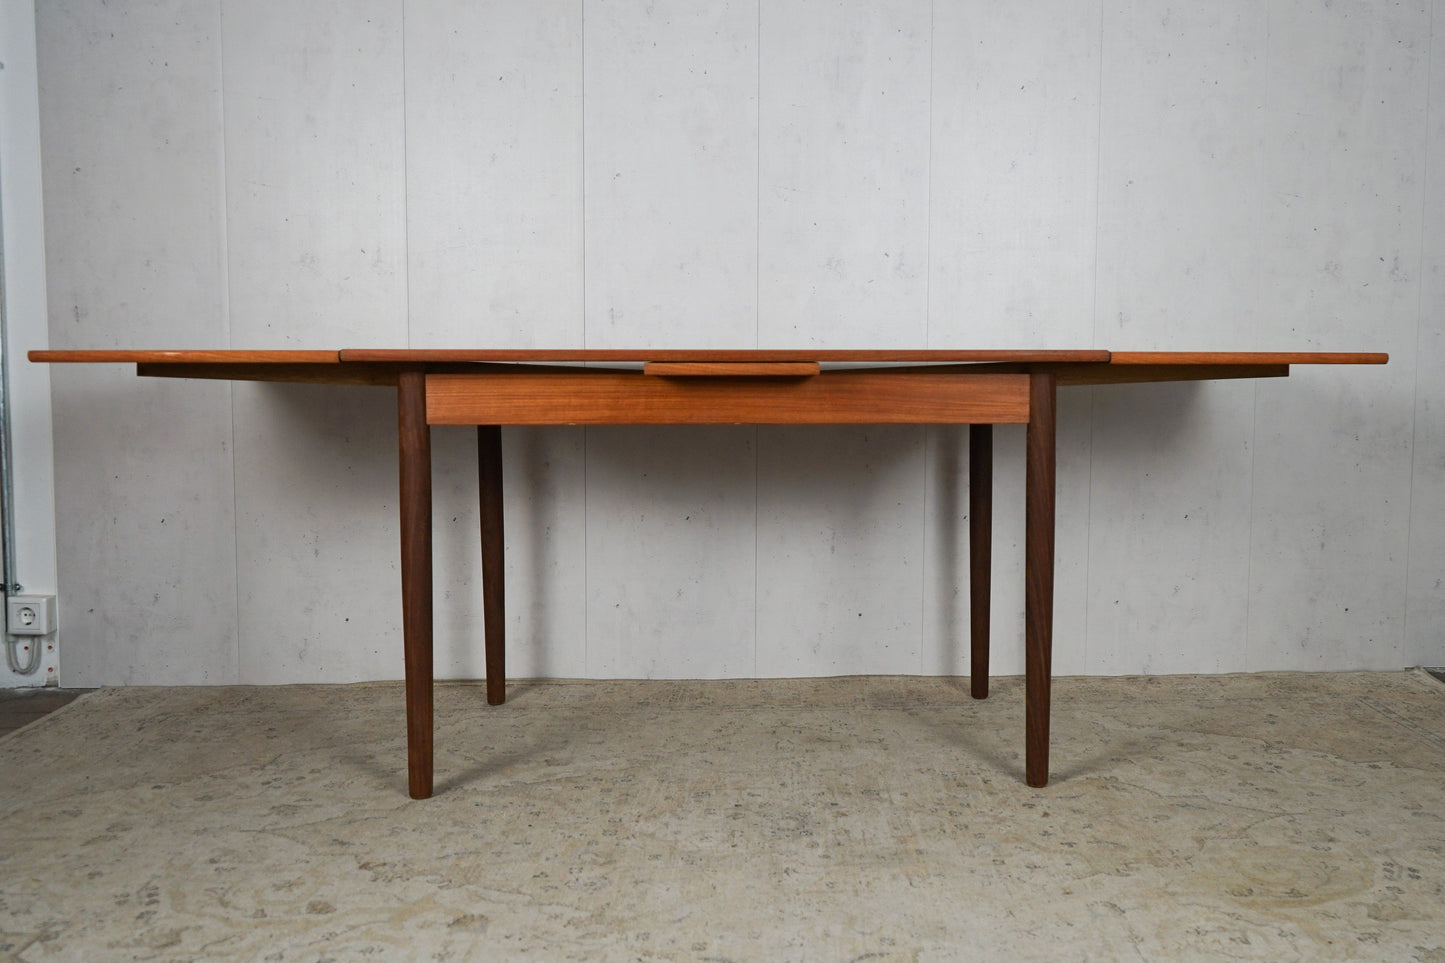 Teak dining table extendable Danish vintage 60s Mid Century